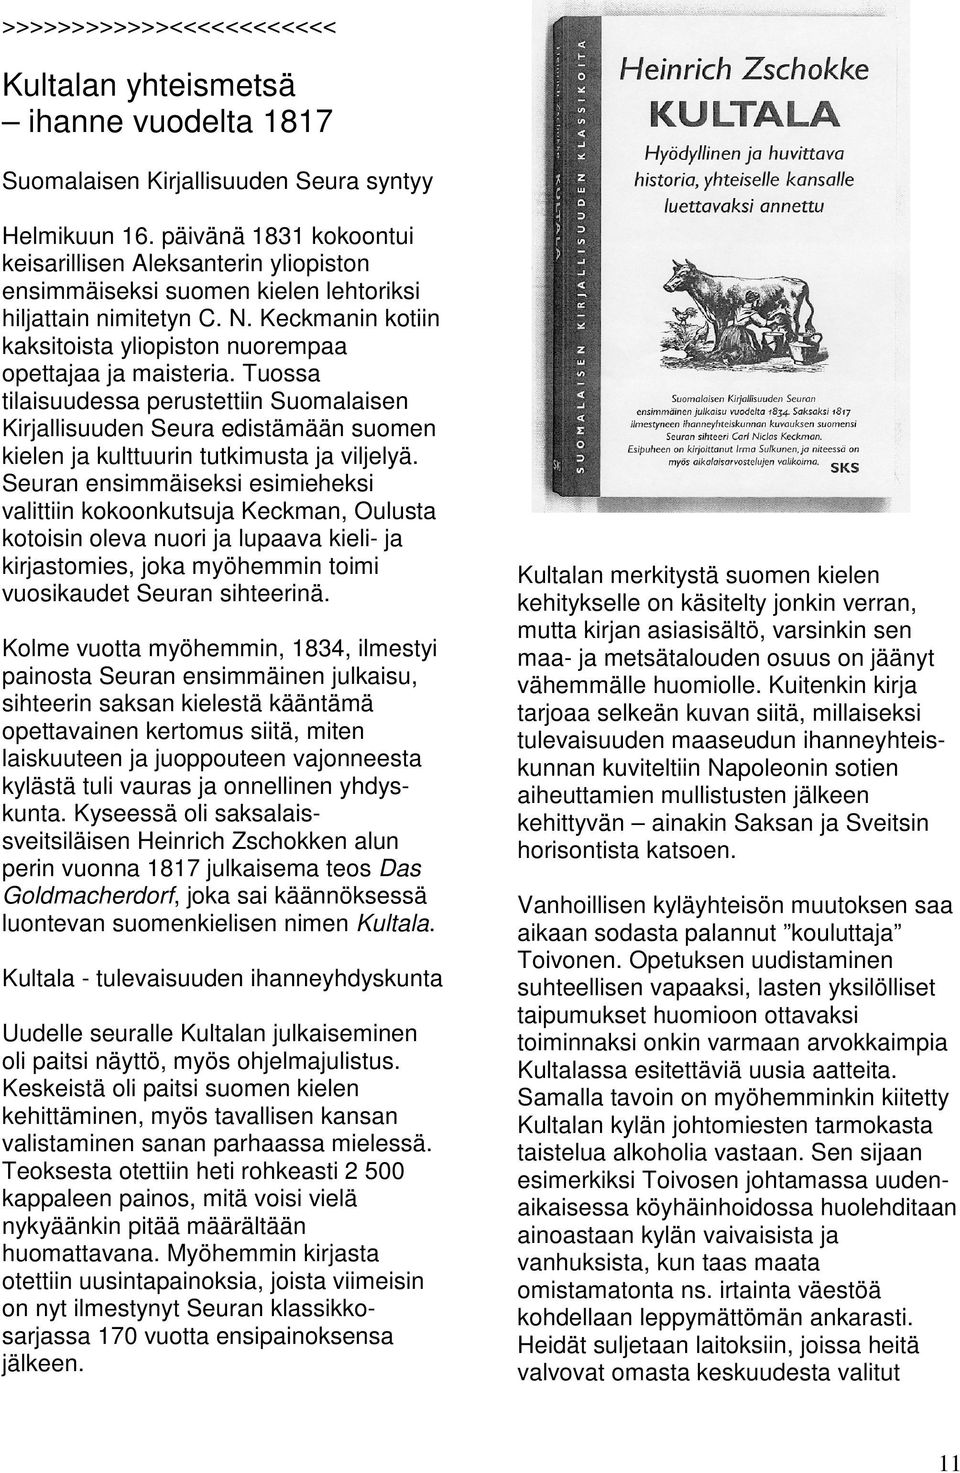 Tuossa tilaisuudessa perustettiin Suomalaisen Kirjallisuuden Seura edistämään suomen kielen ja kulttuurin tutkimusta ja viljelyä.